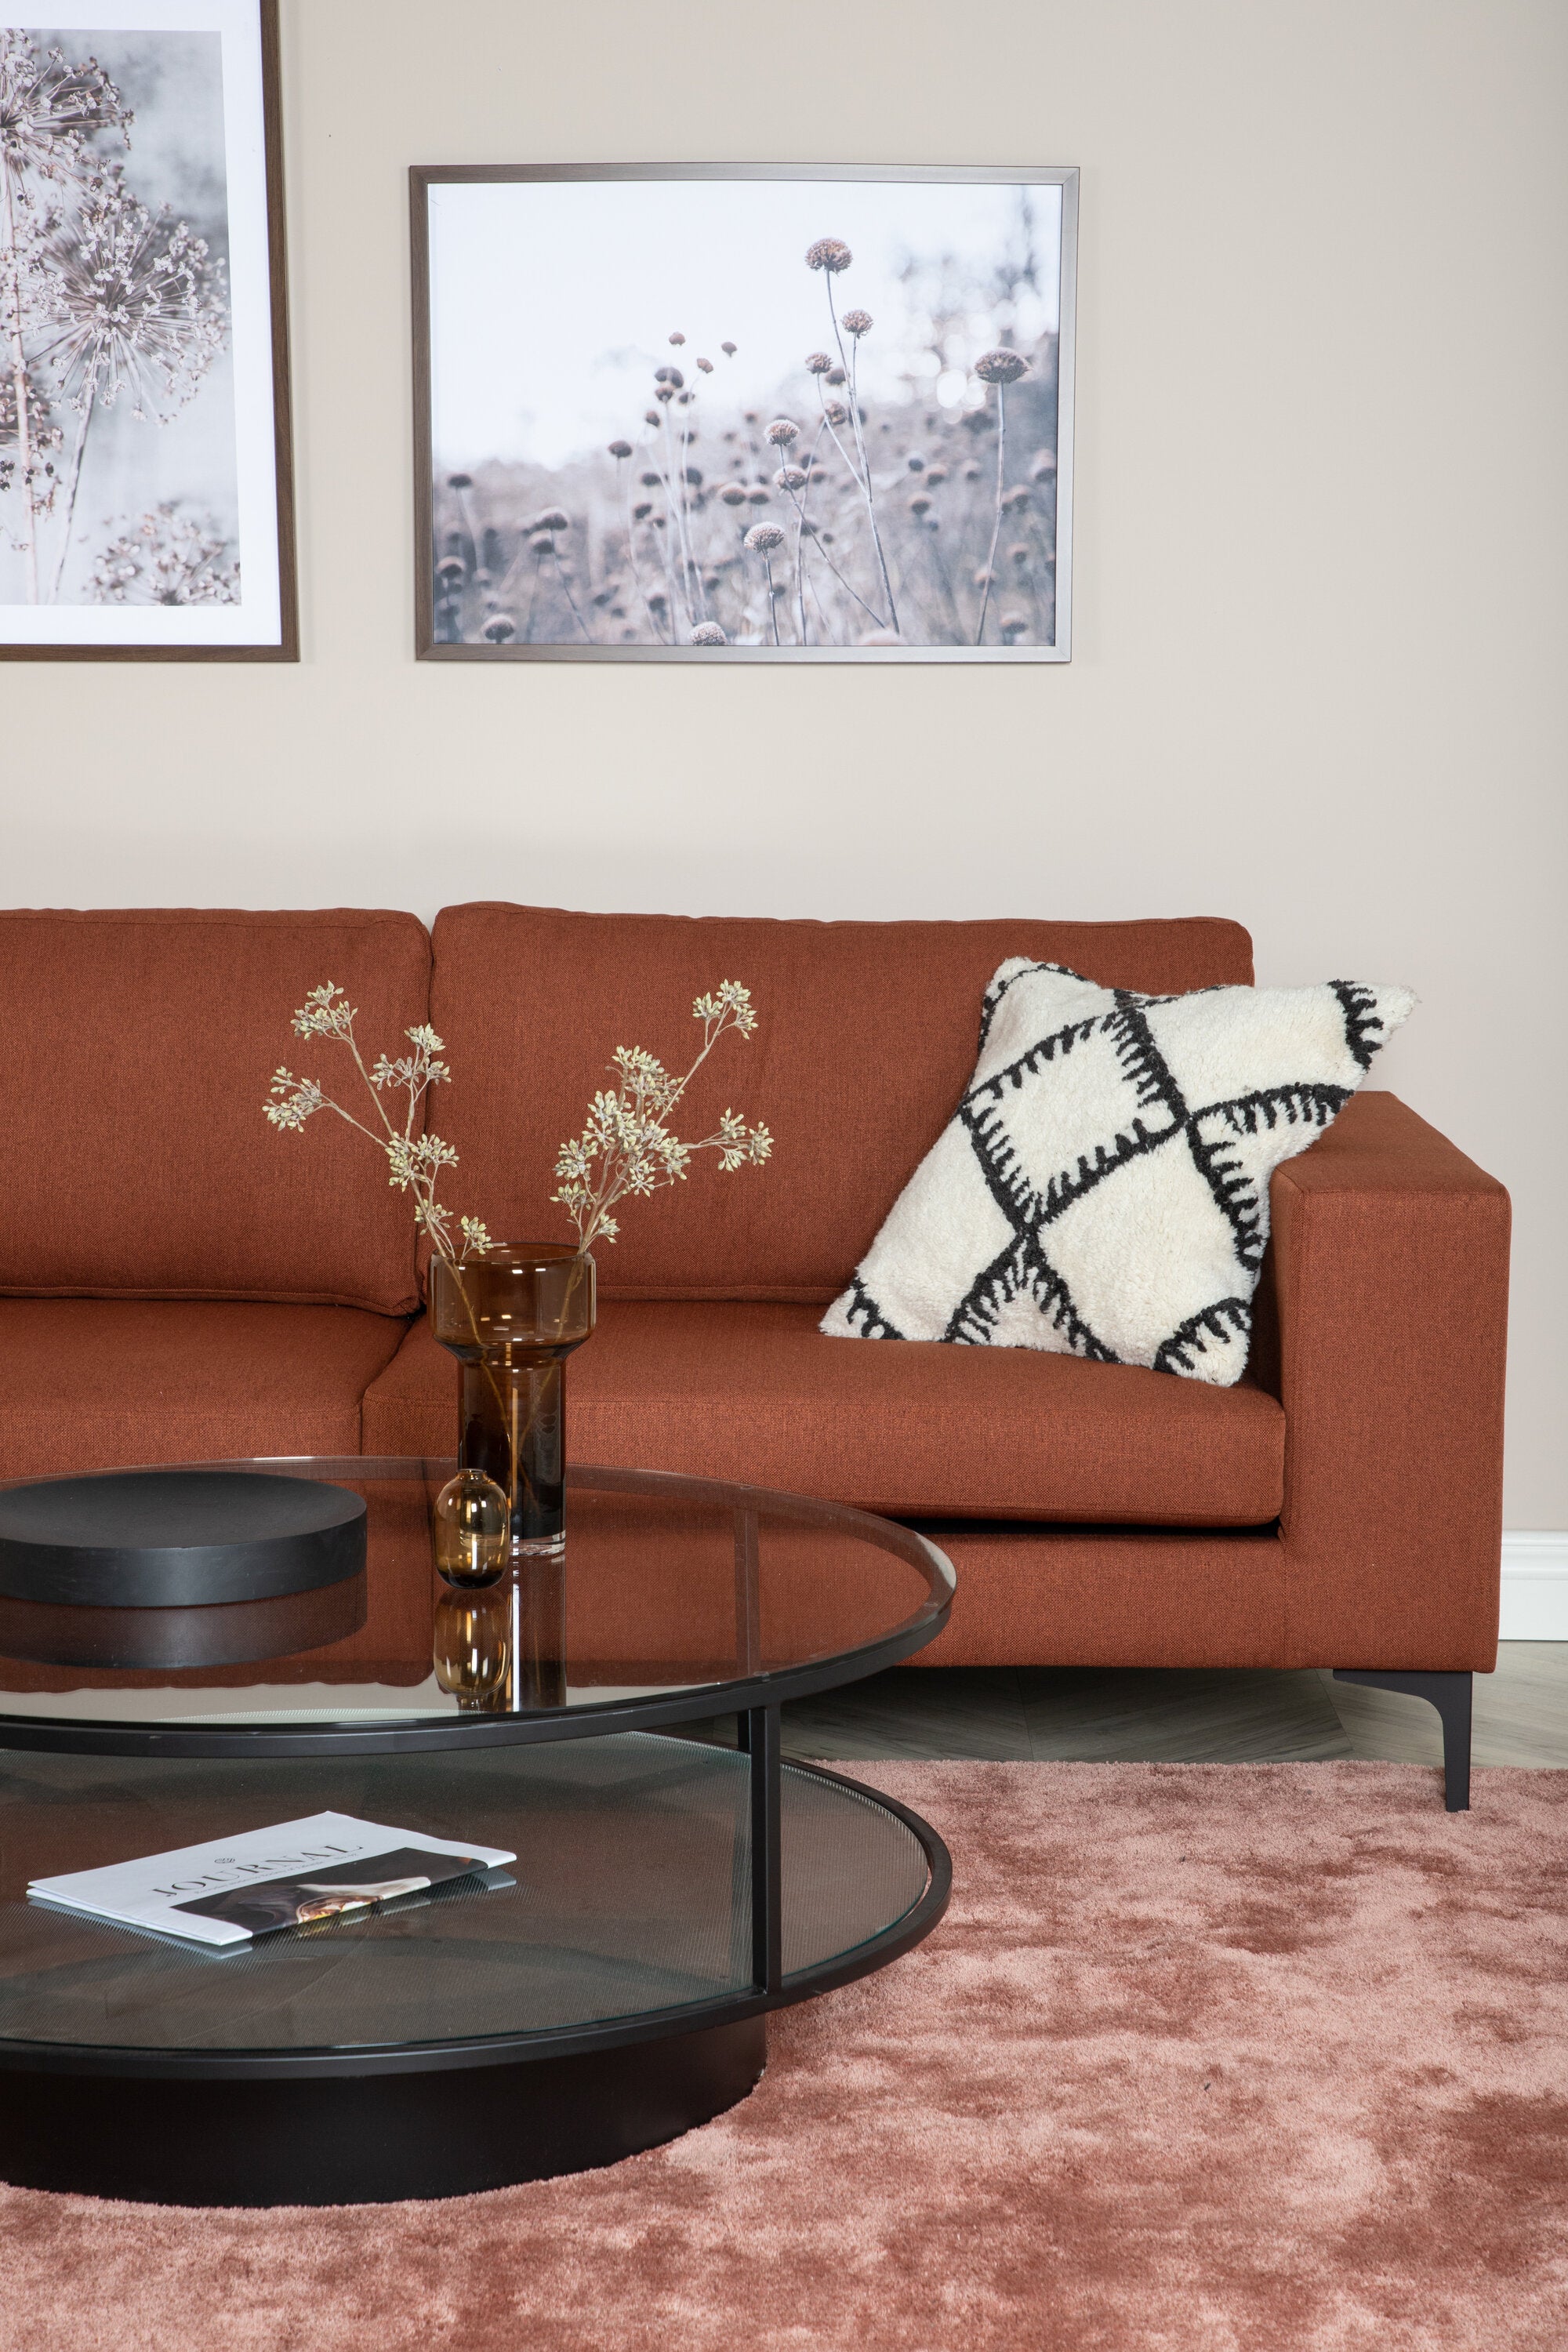 Bolero Sofa - KAQTU Design